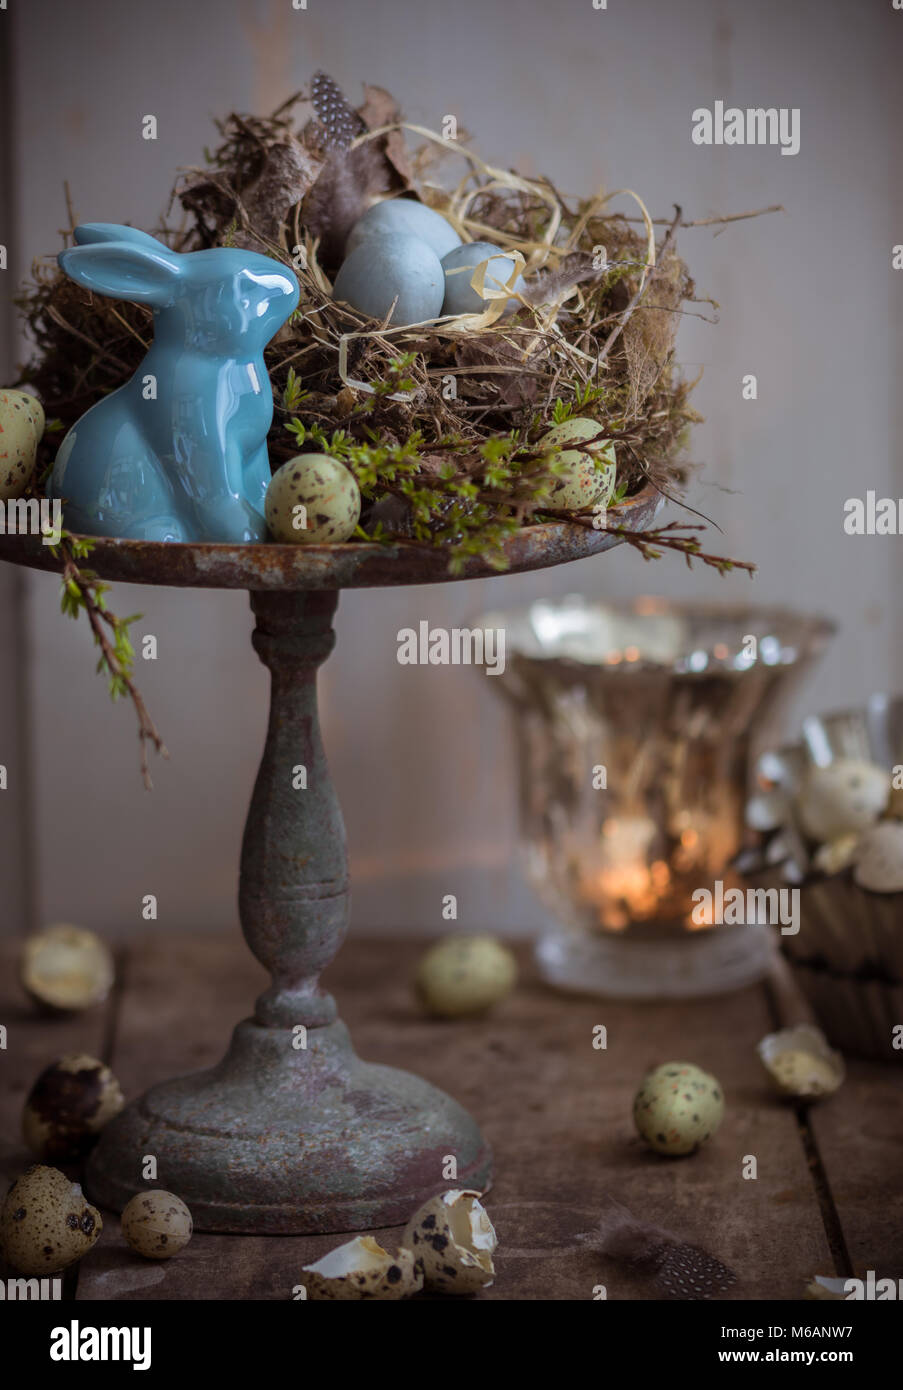 Pasqua decorazioni per la tavola in blu strega lume di candela Foto Stock